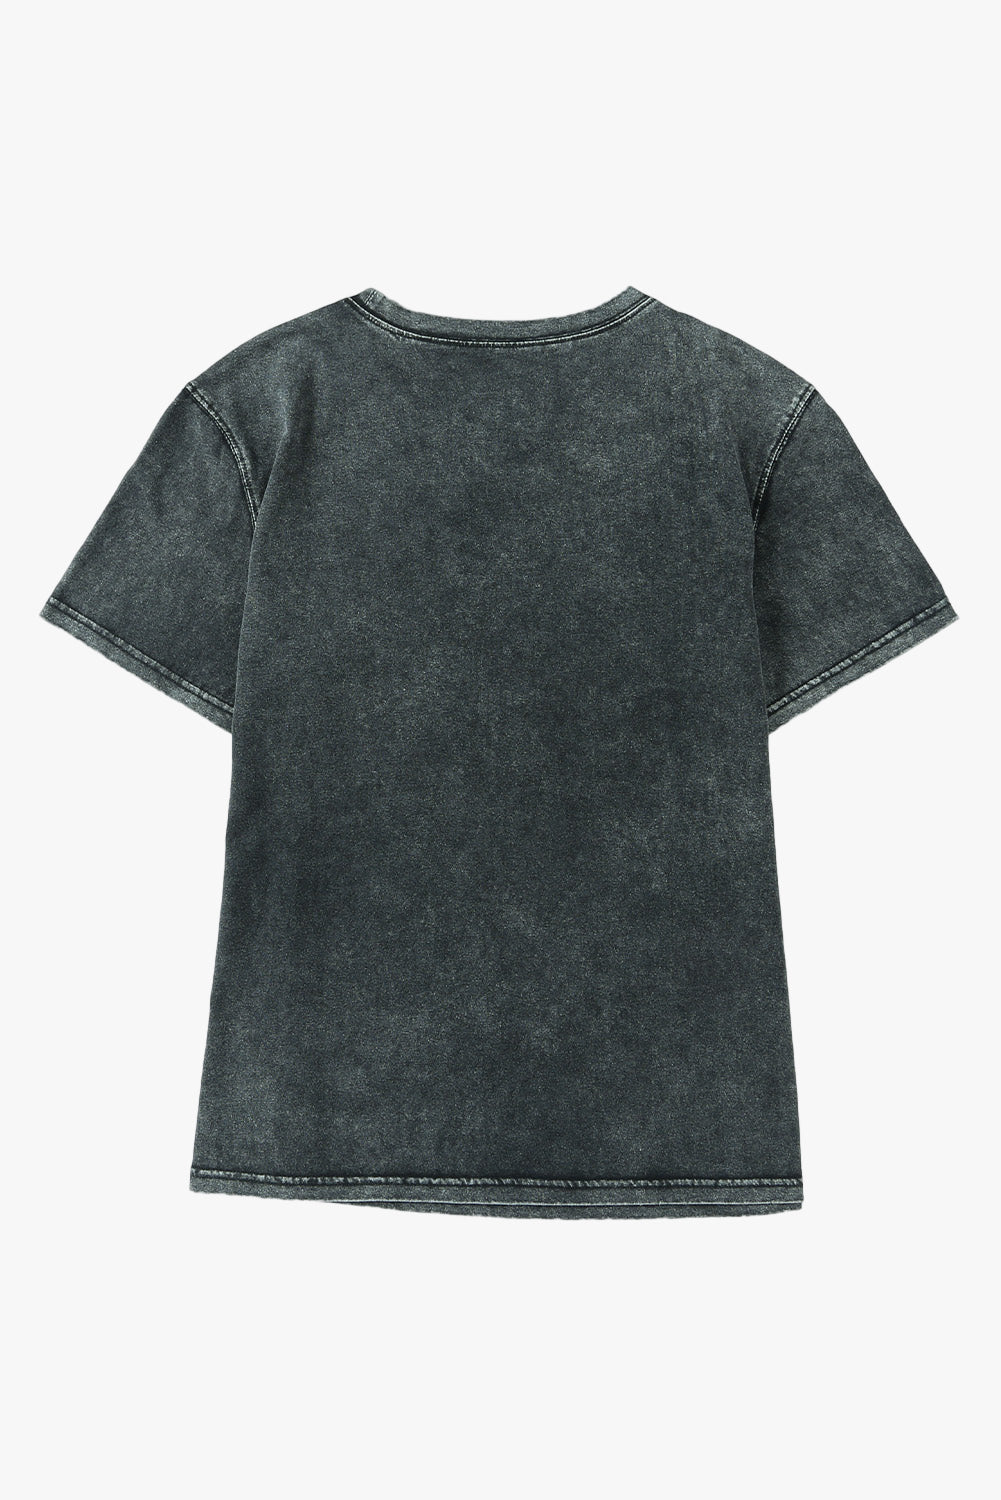 T-shirt casual a maniche corte lavata minerale nera